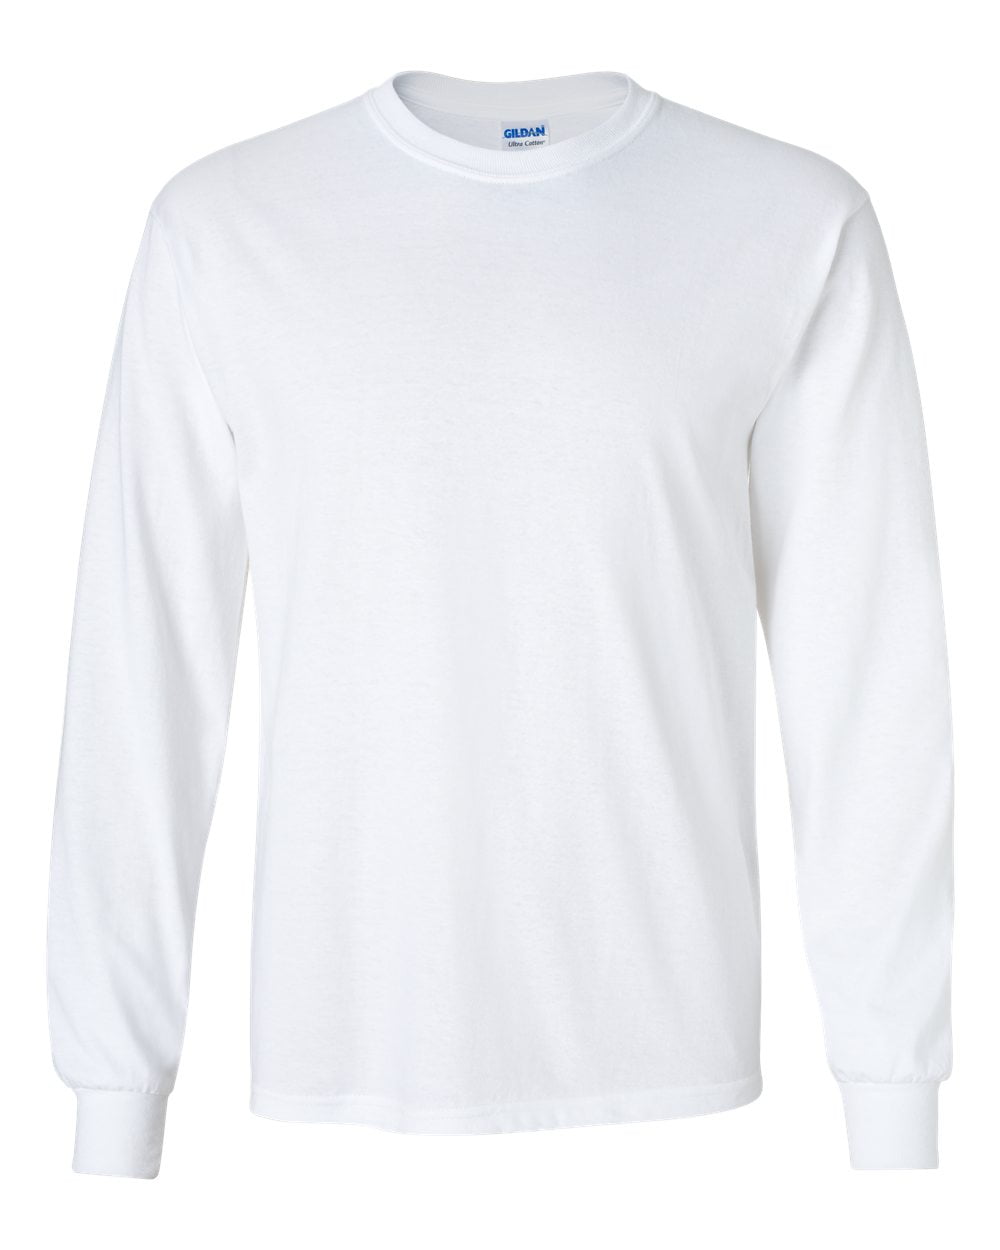 Gildan Men's Ultra Cotton Long Sleeve T-Shirt Walmart.com